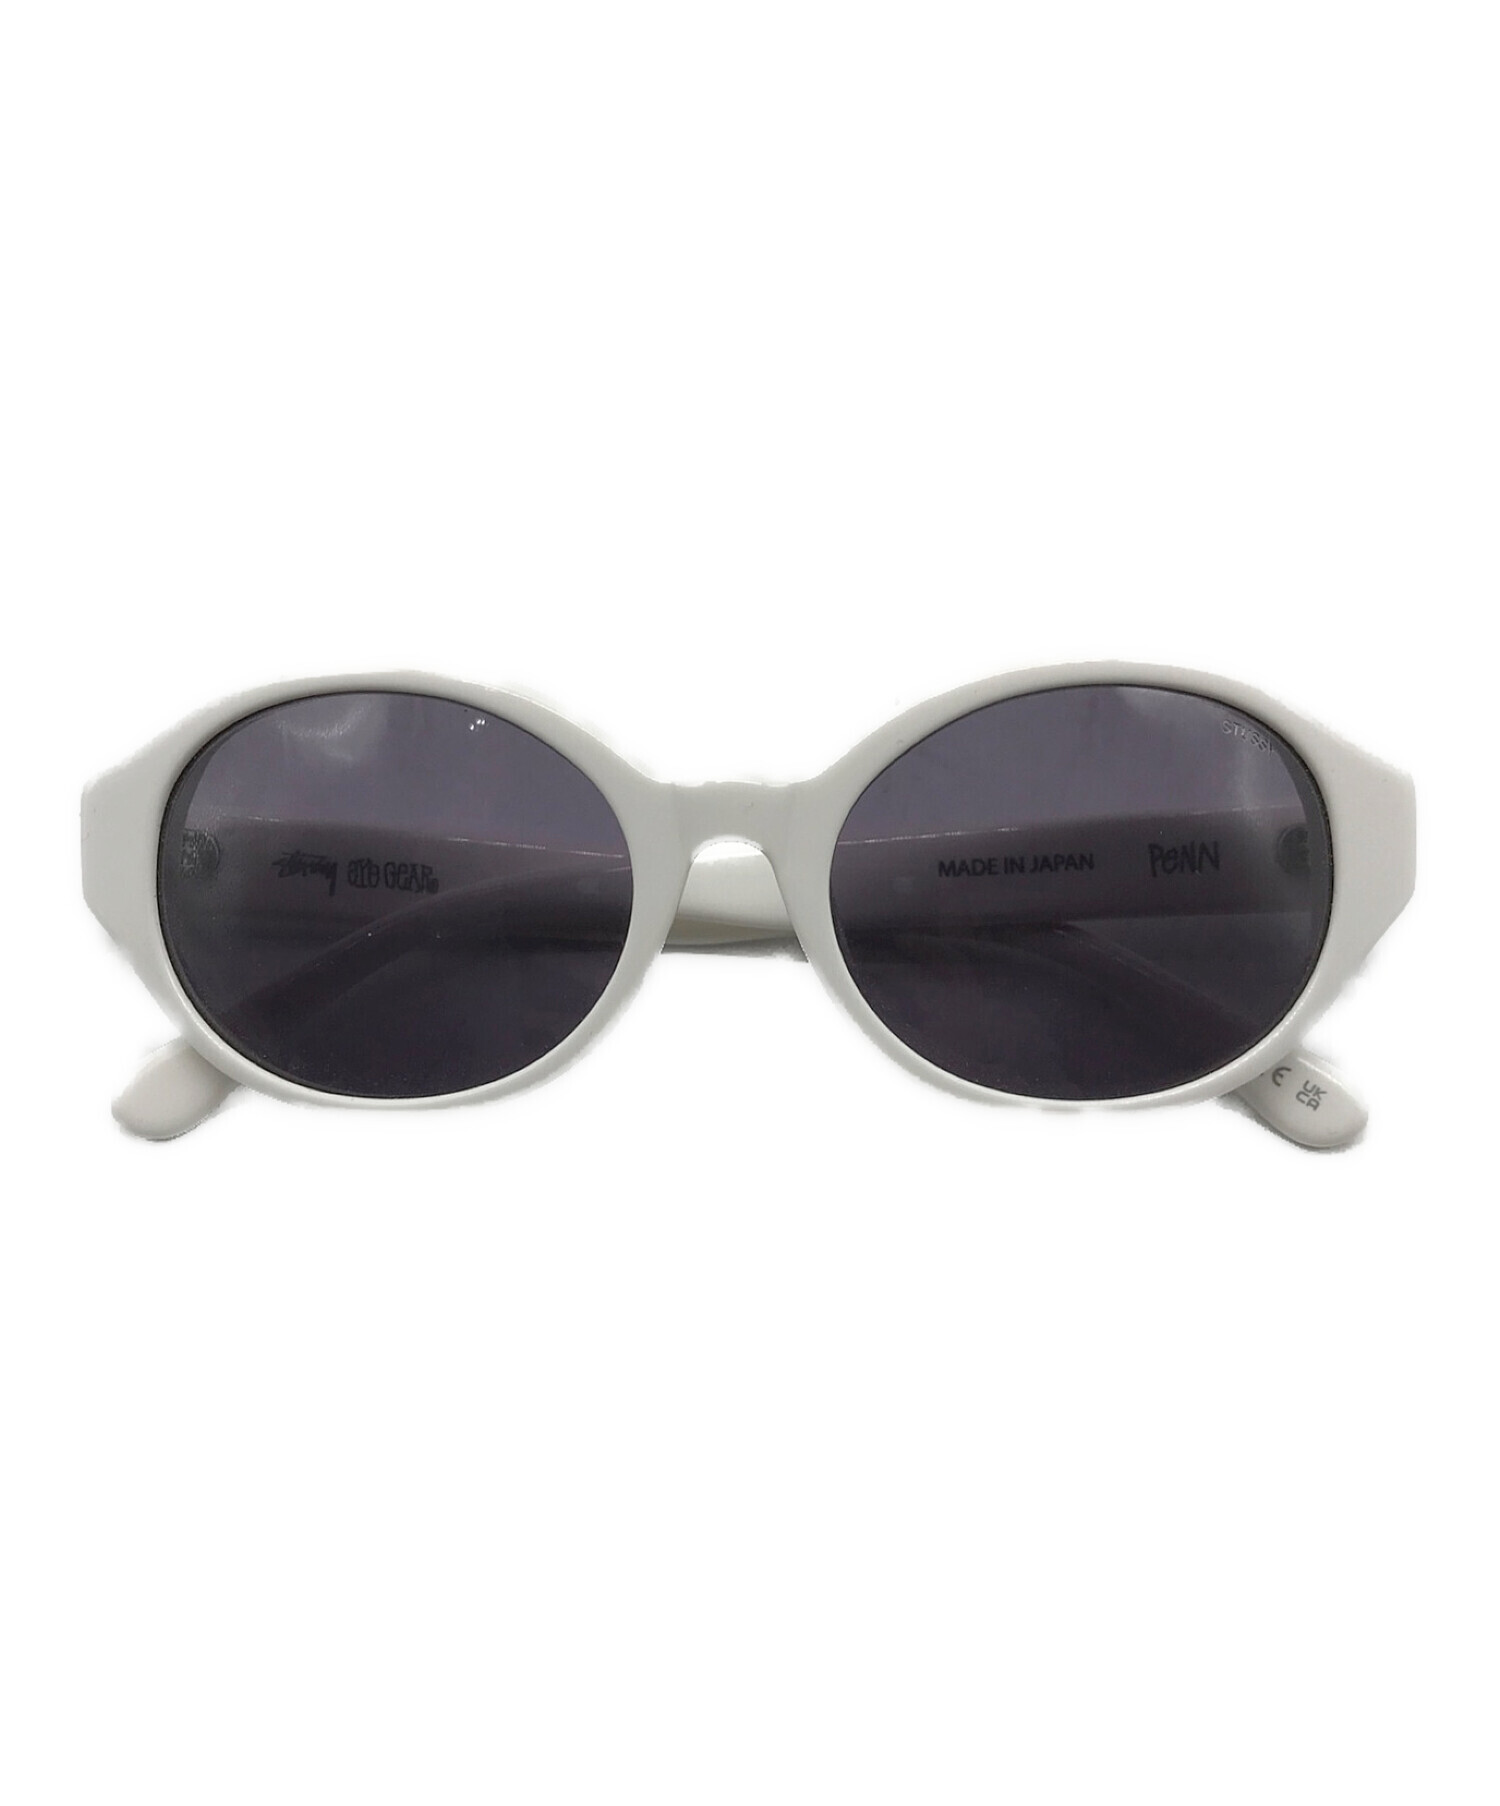 安心stussy penn sunglasses(最終値引き) 小物